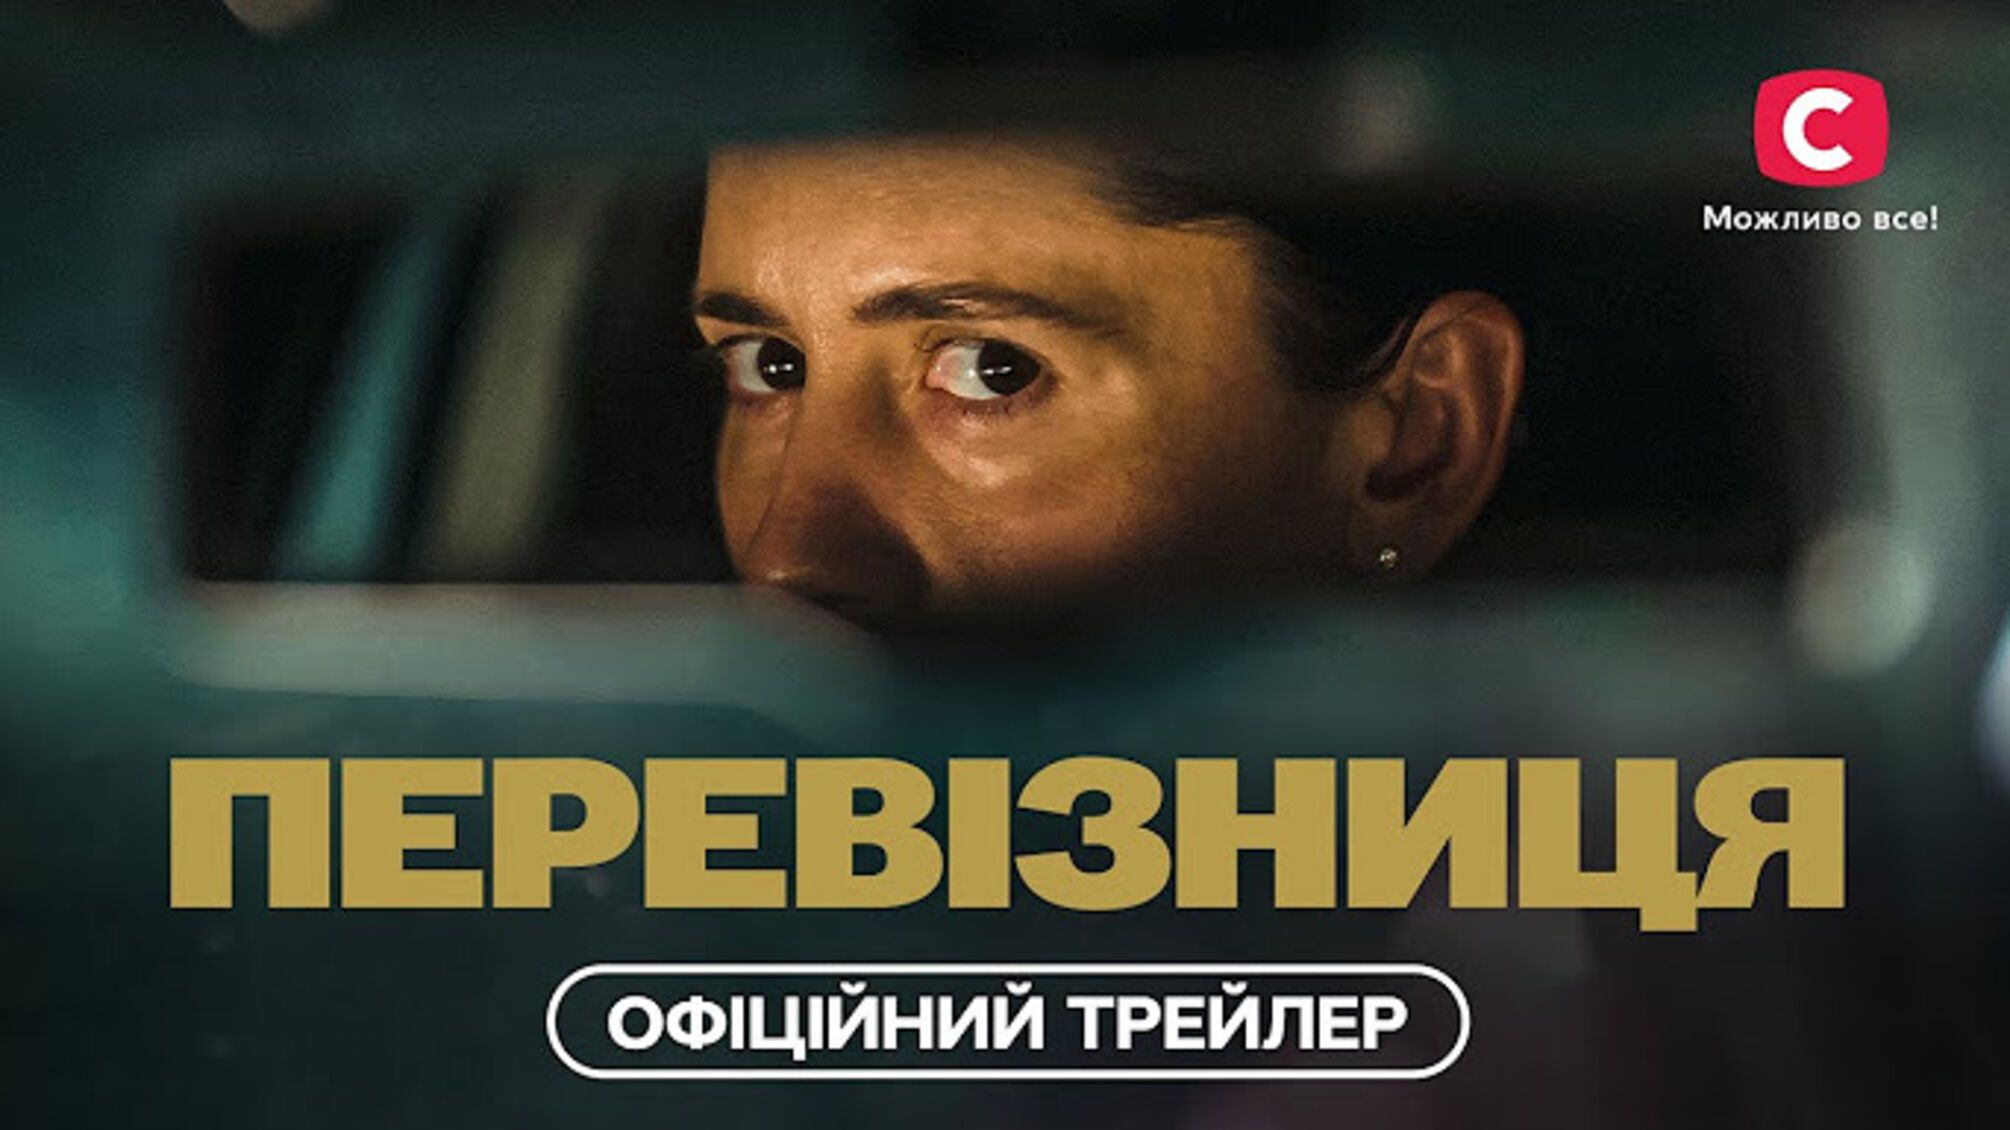 'Перевозница' это сочетание эмоций и социальной сущности украинской драмы